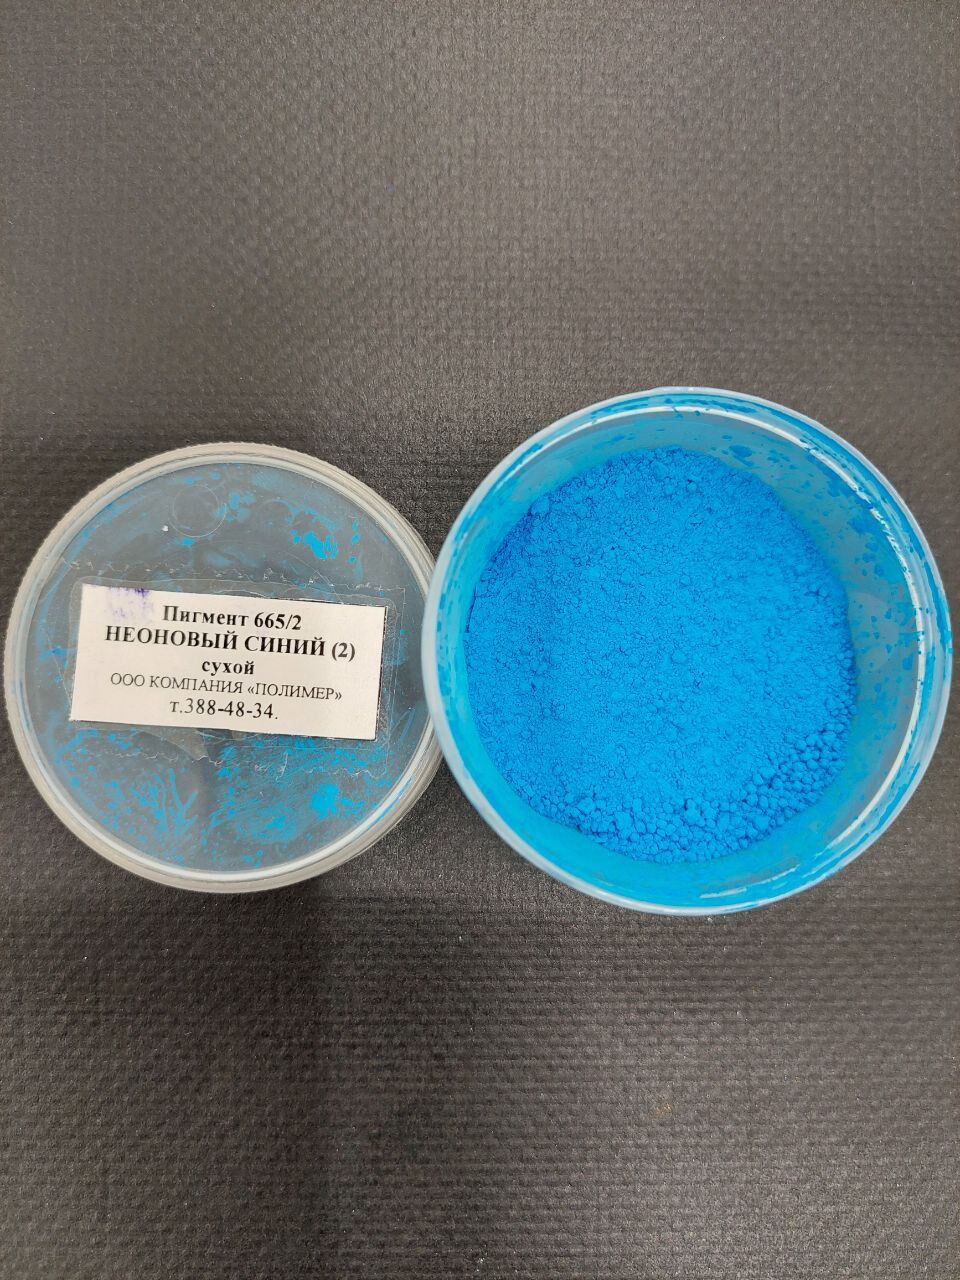 Пигмент 665/2 неоновый синий (2) сухой